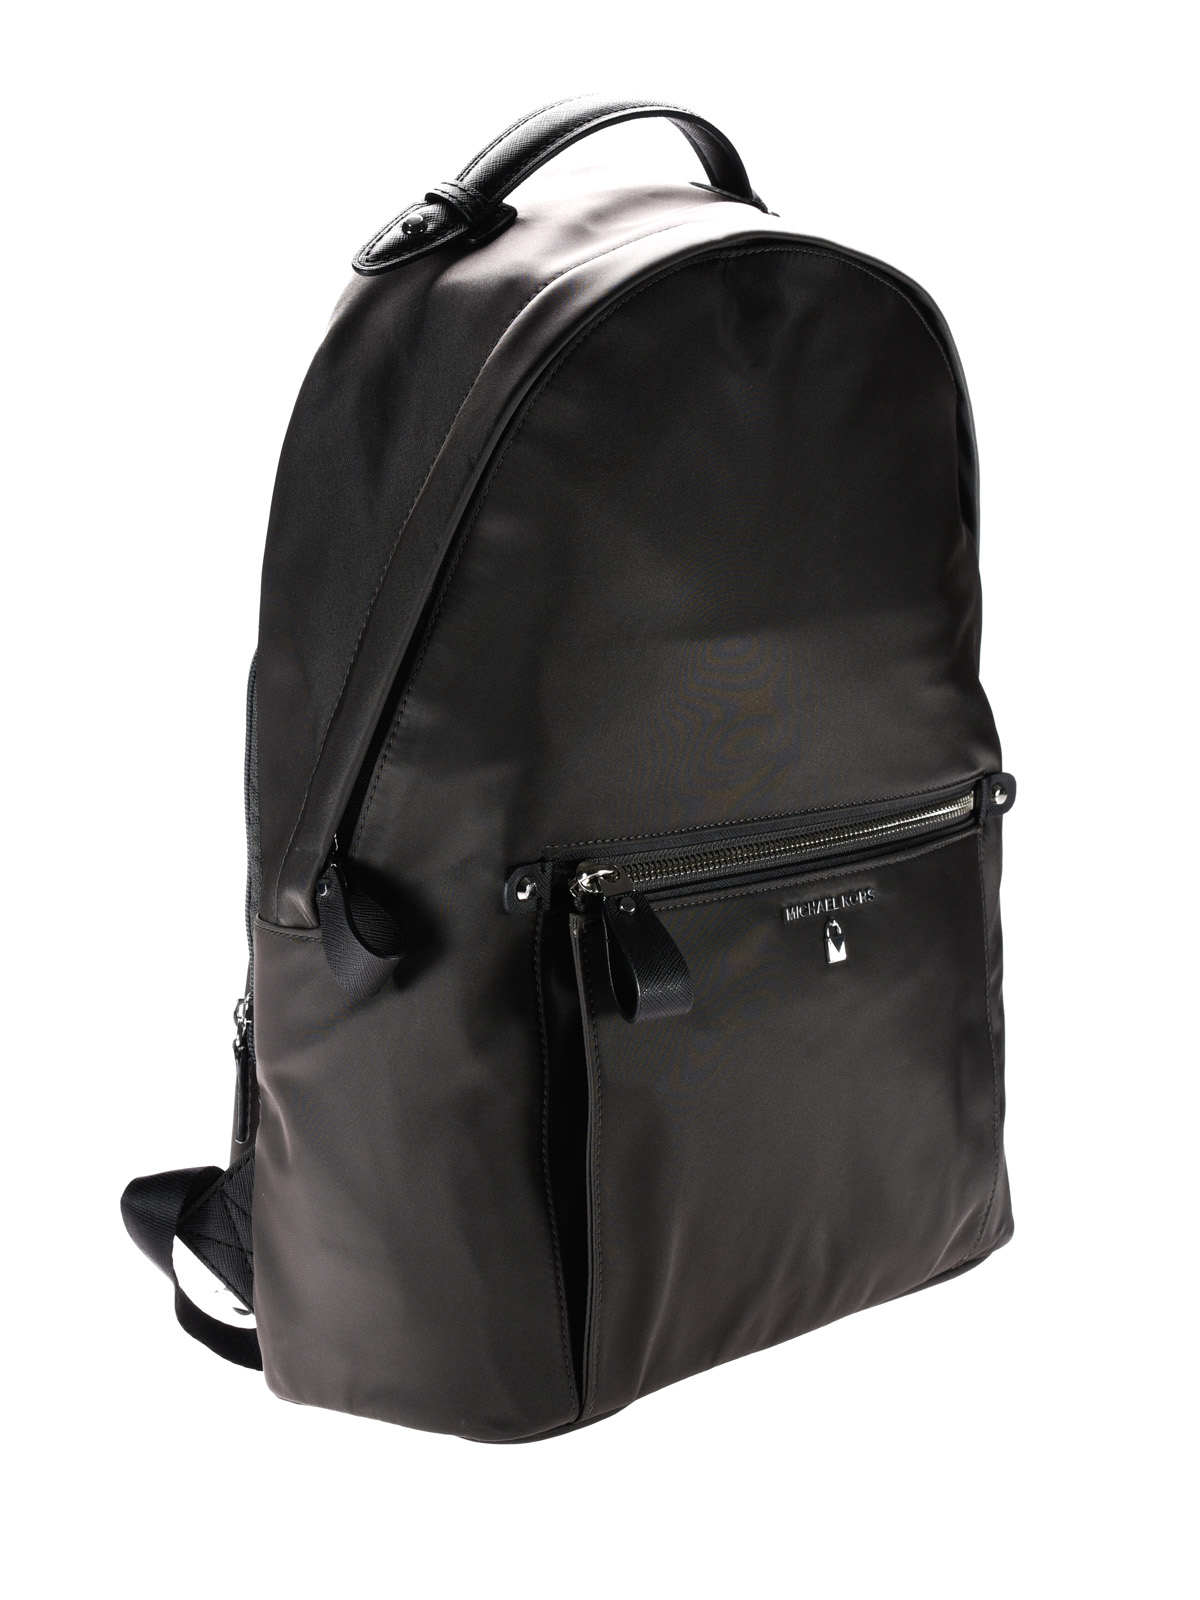 Michael Kors Handbag  Nylon Kelsey Large Backpack Bag Black  Konga  Online Shopping